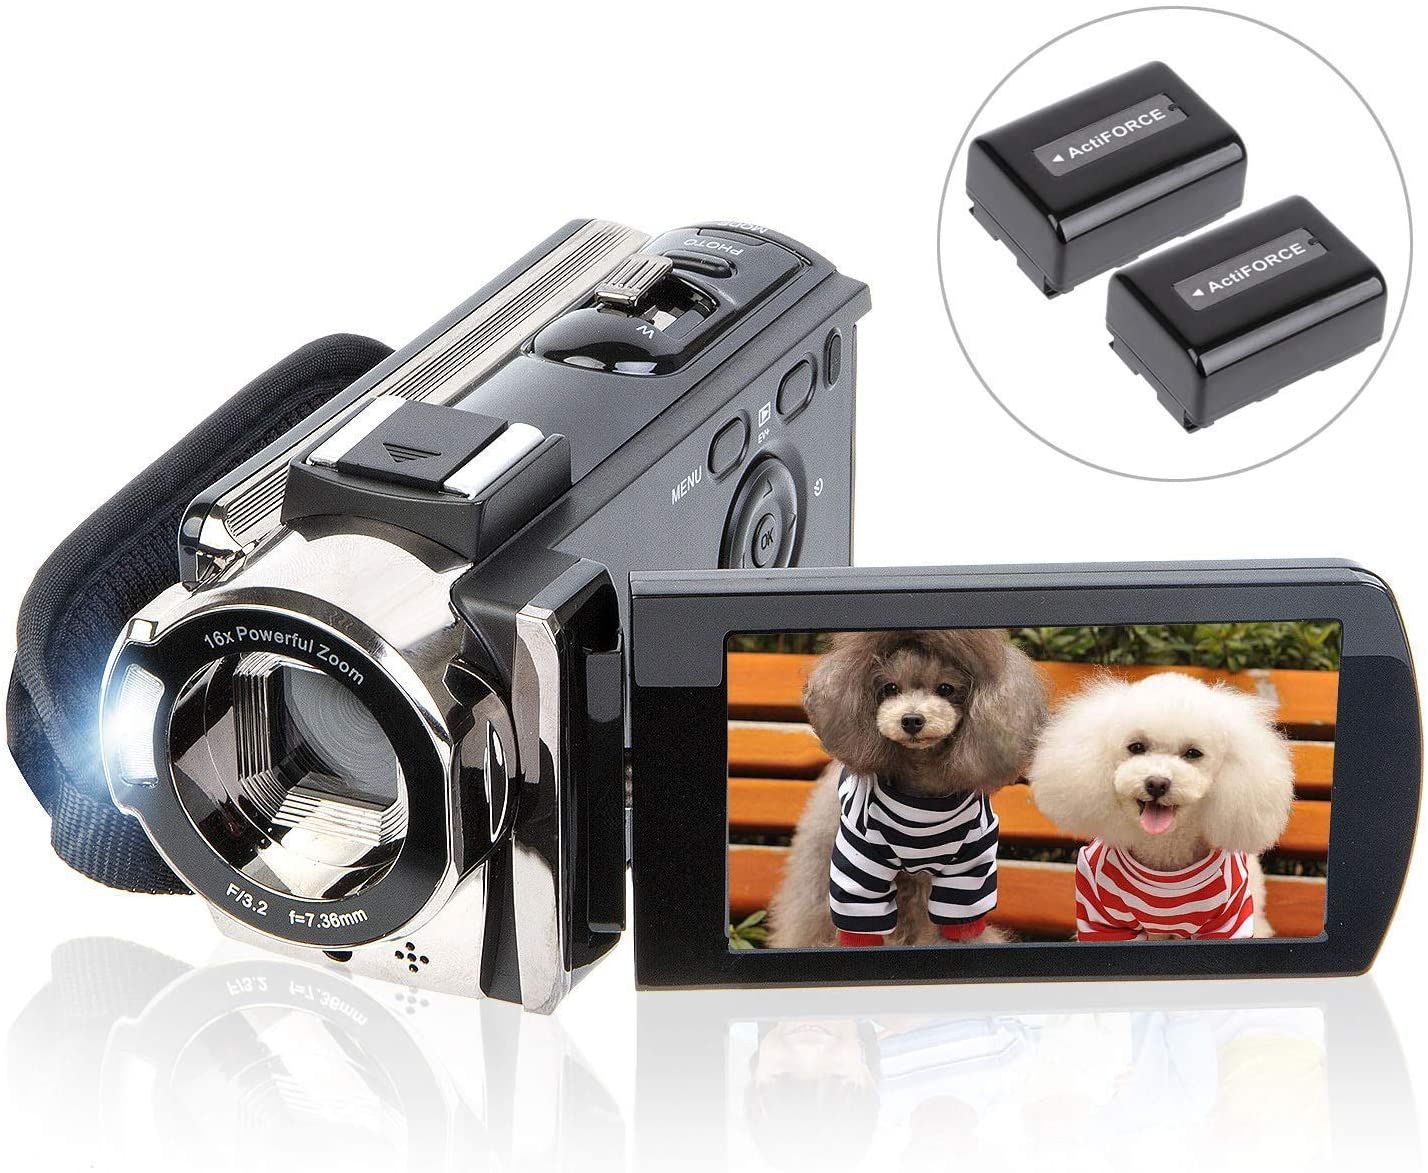 Kicteck Video Camera Camcorder a